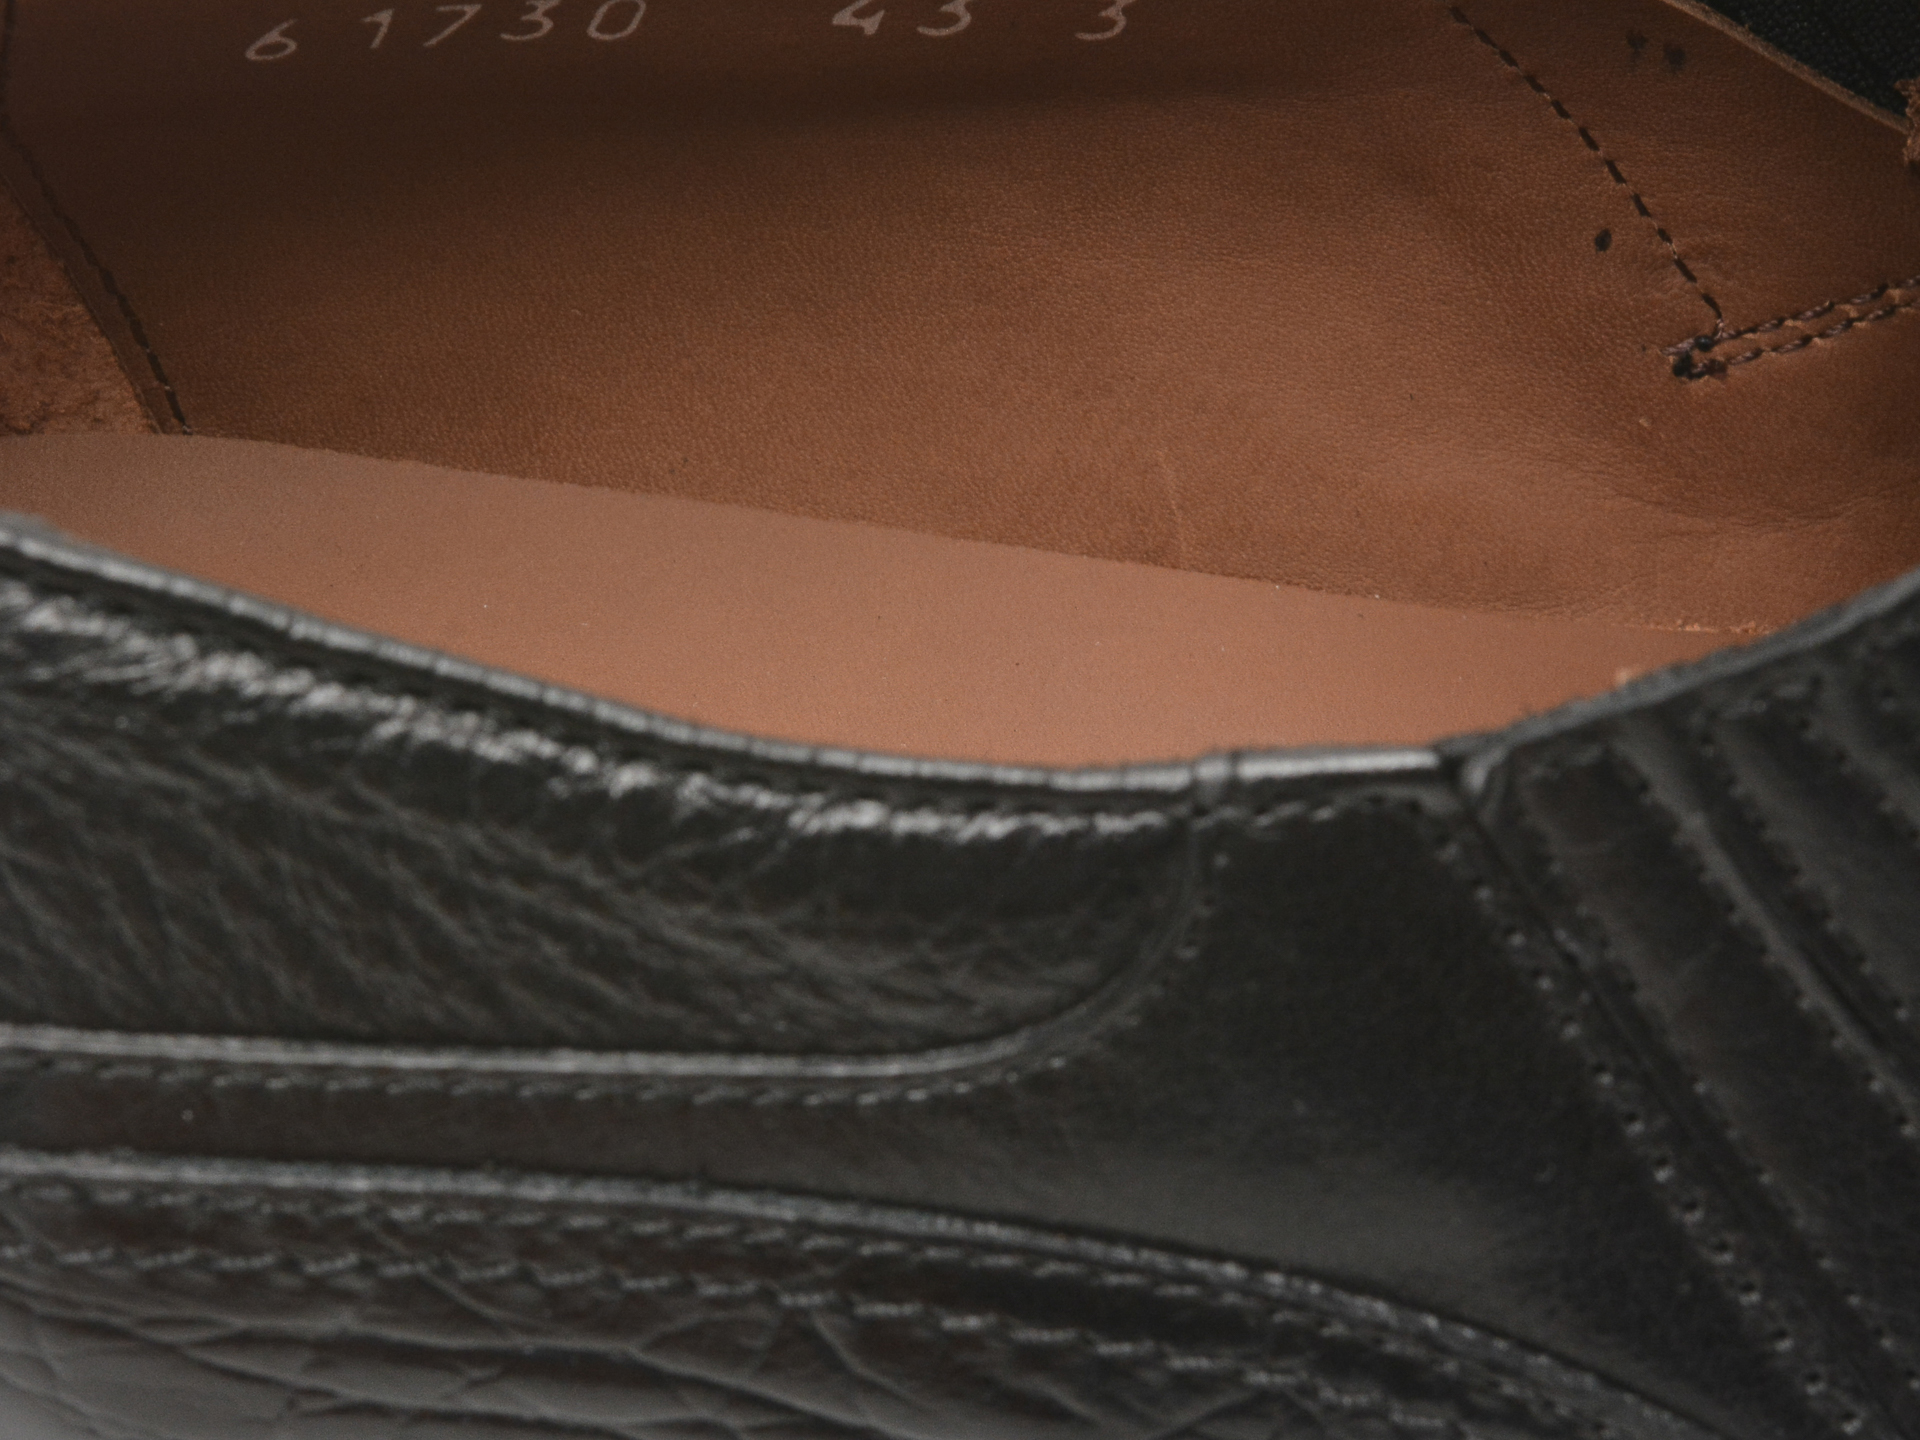 Poze Pantofi LE COLONEL negri, 61730, din piele naturala